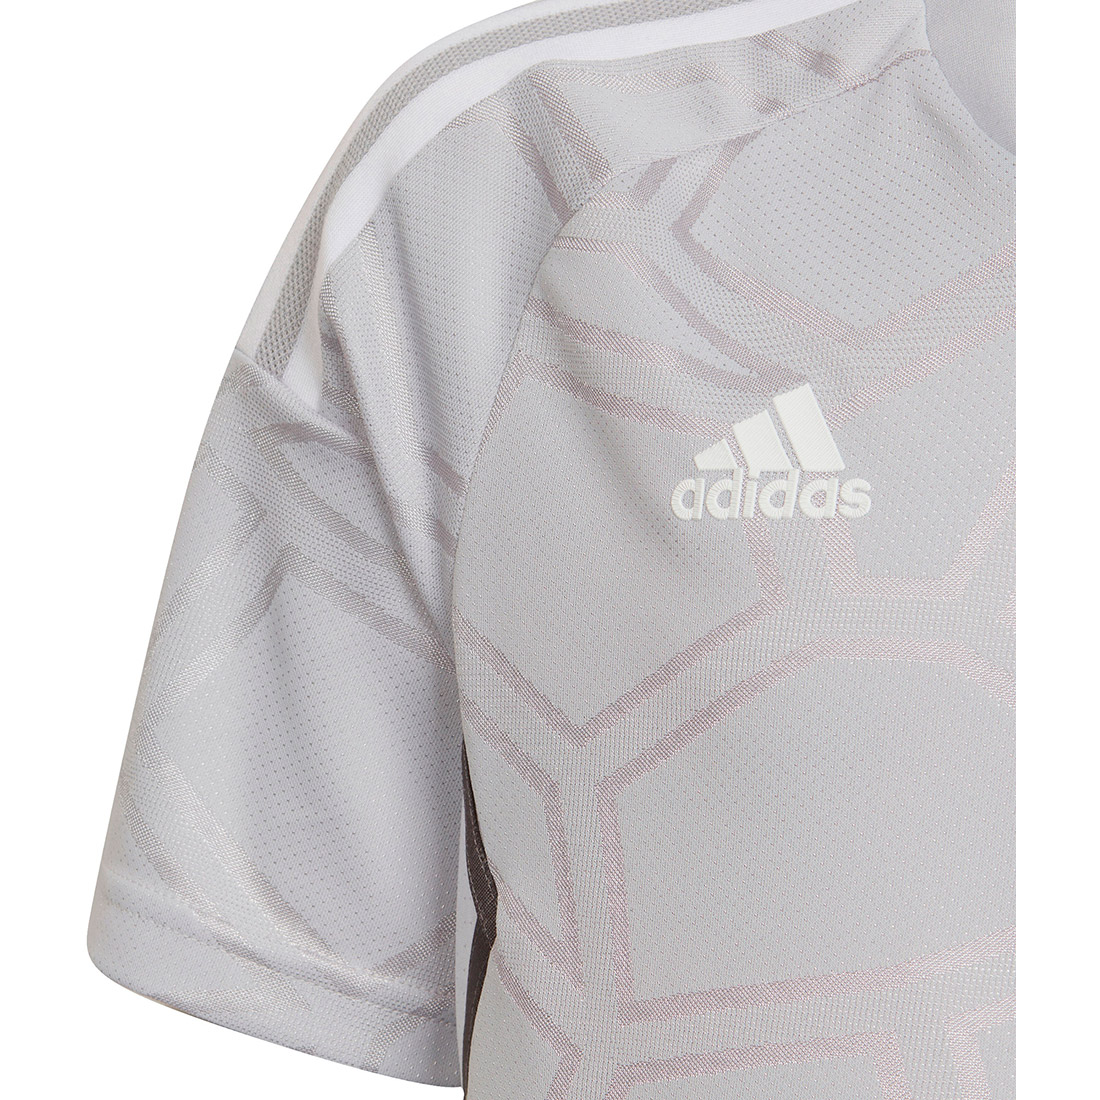 Trikot Kinder Adidas grau-weiß Condivo kaufen 22 MD online